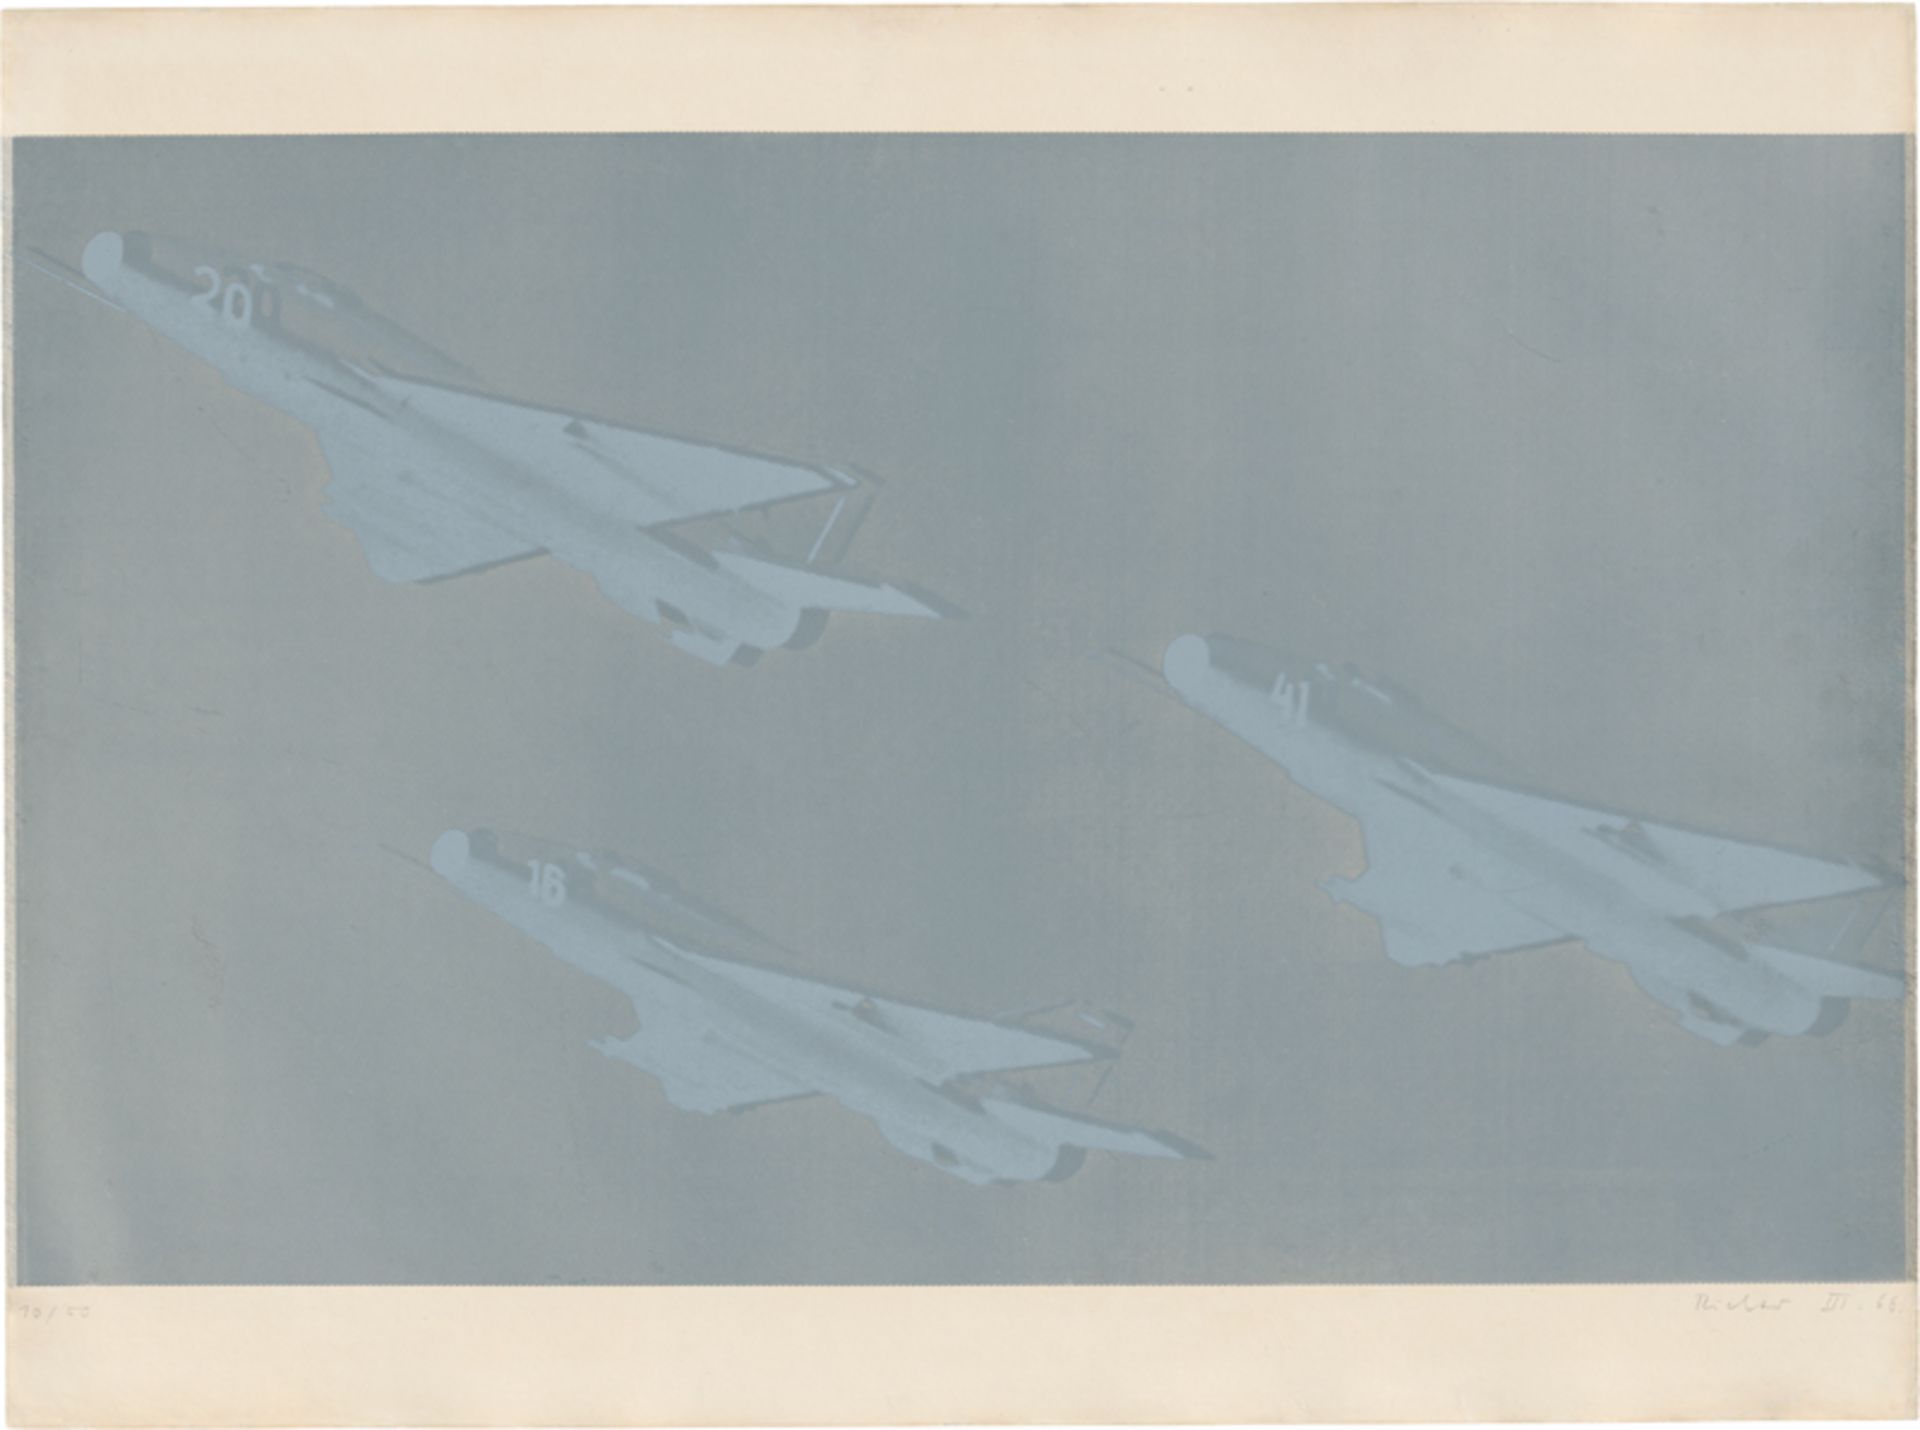 Richter, Gerhard: Flugzeug I